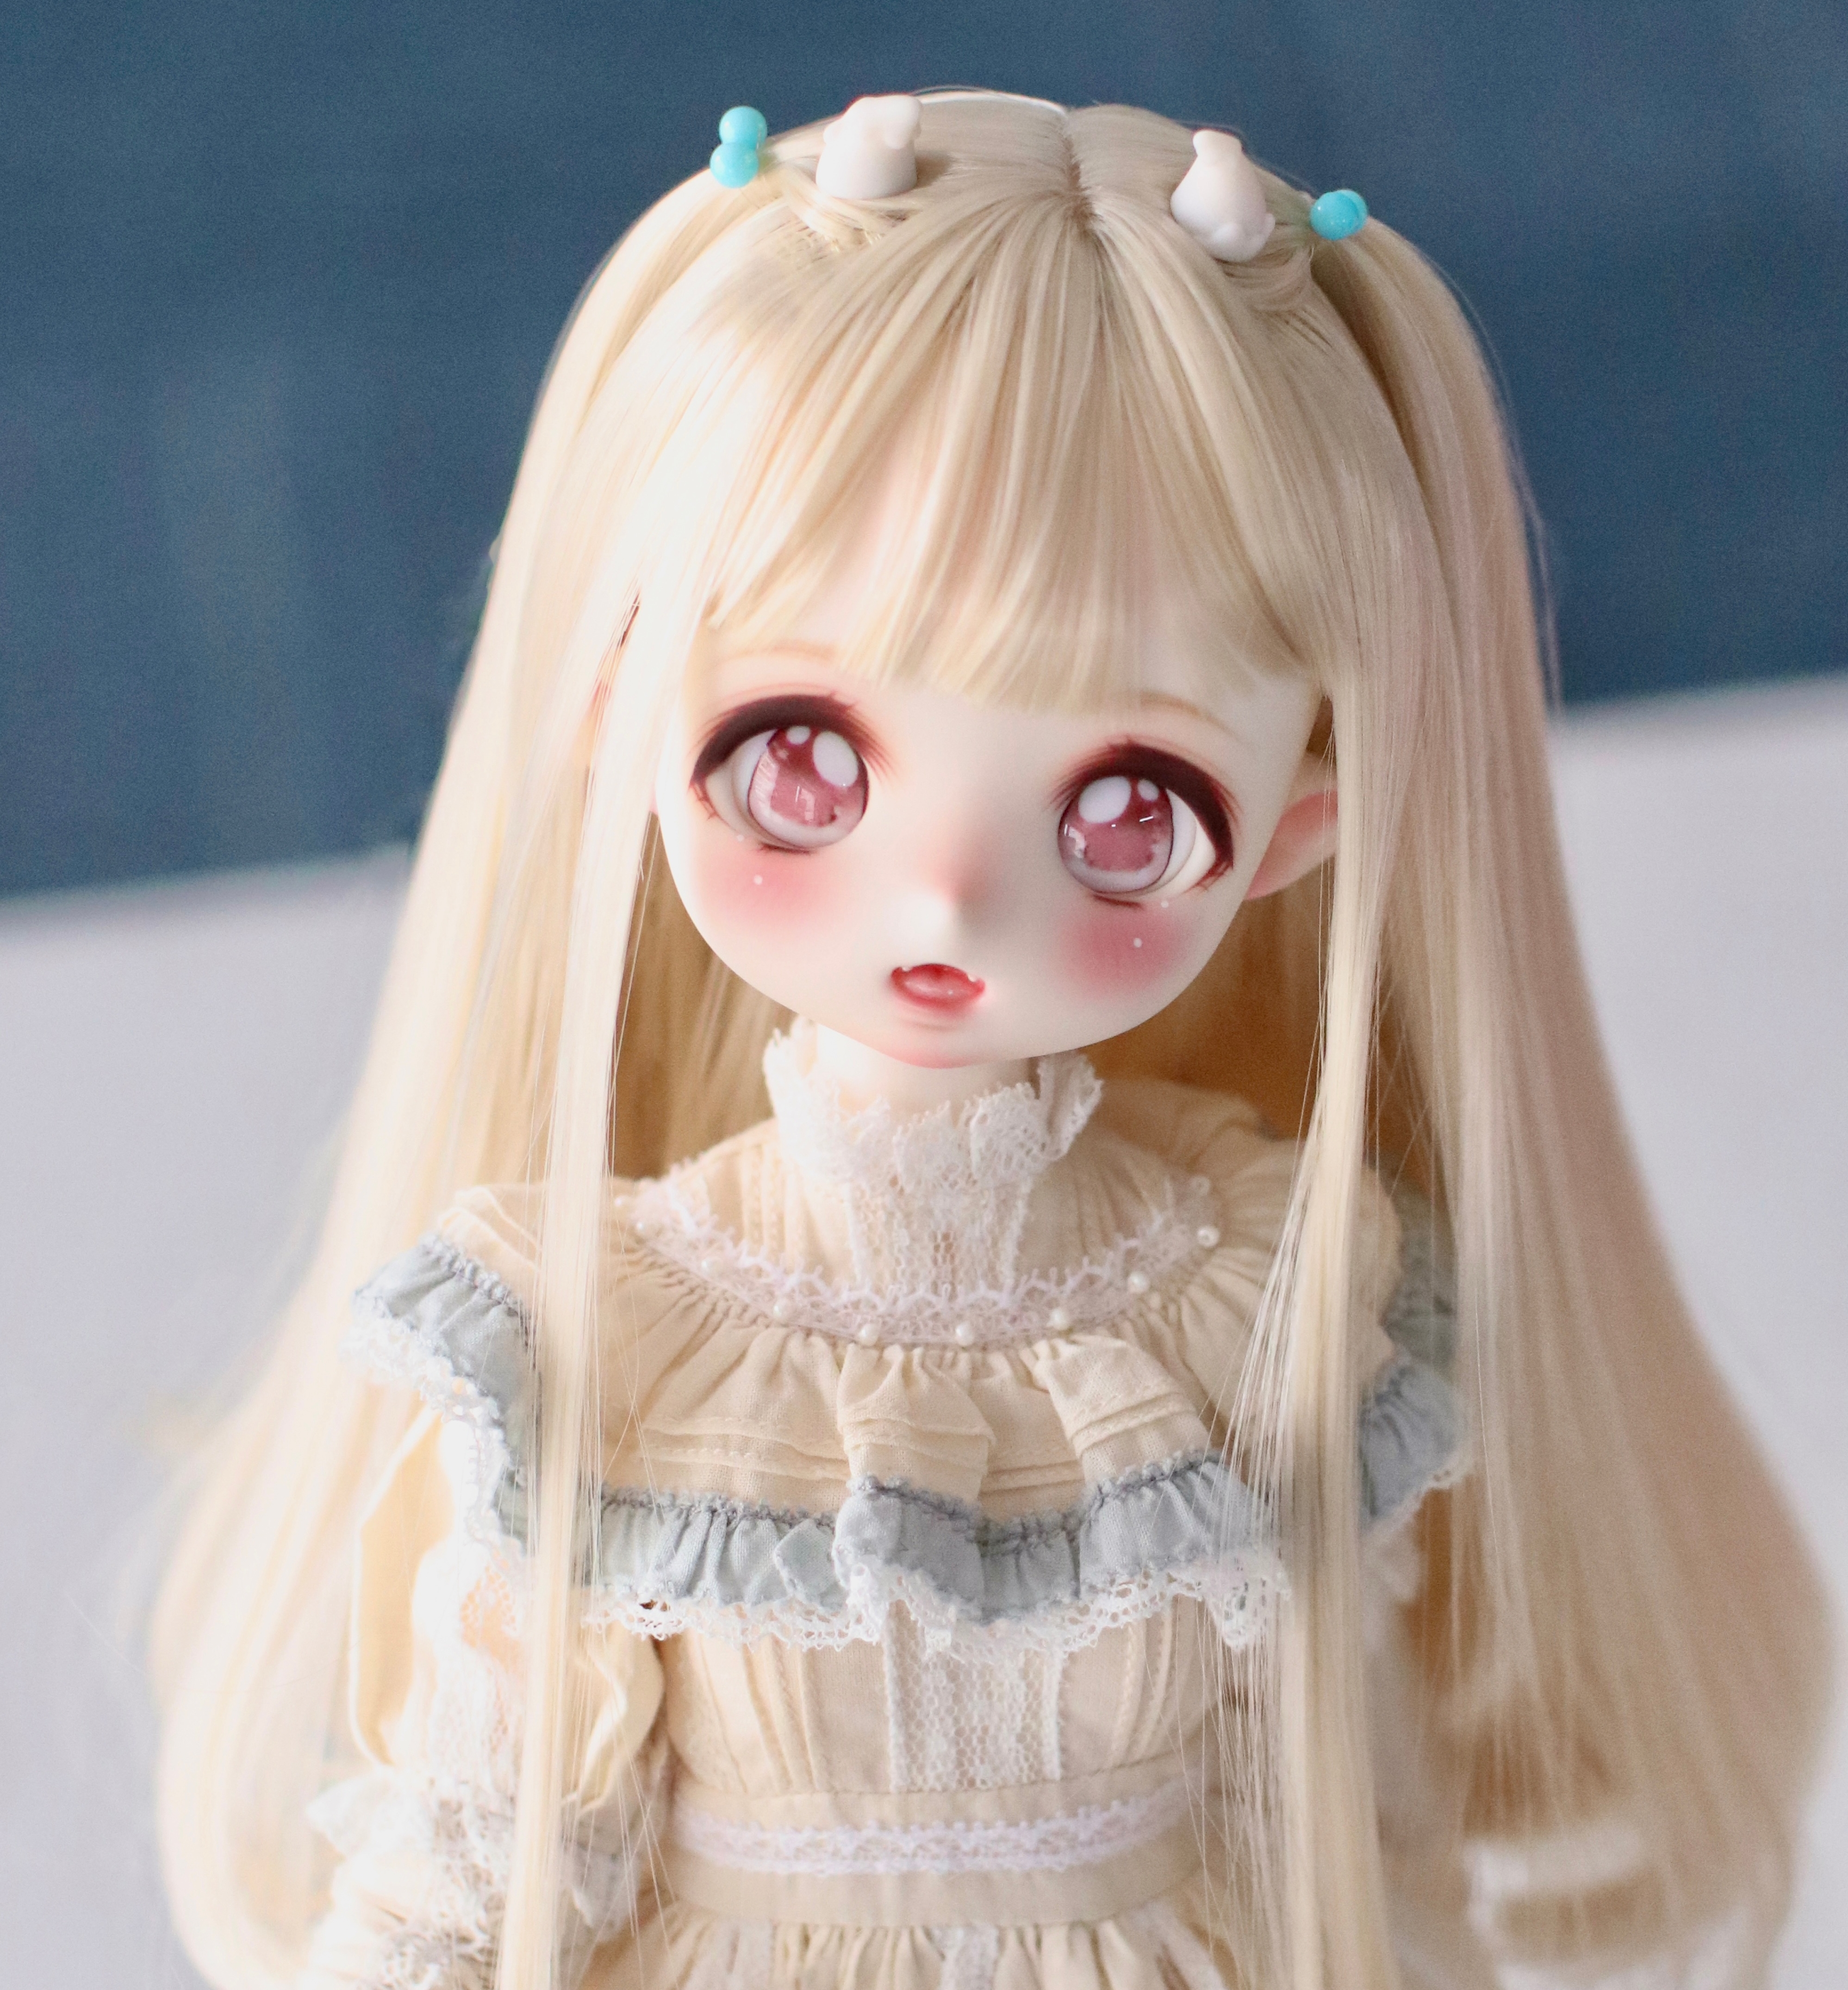 Anime face Viki02 21cm doll 1/6 bjd - Click Image to Close